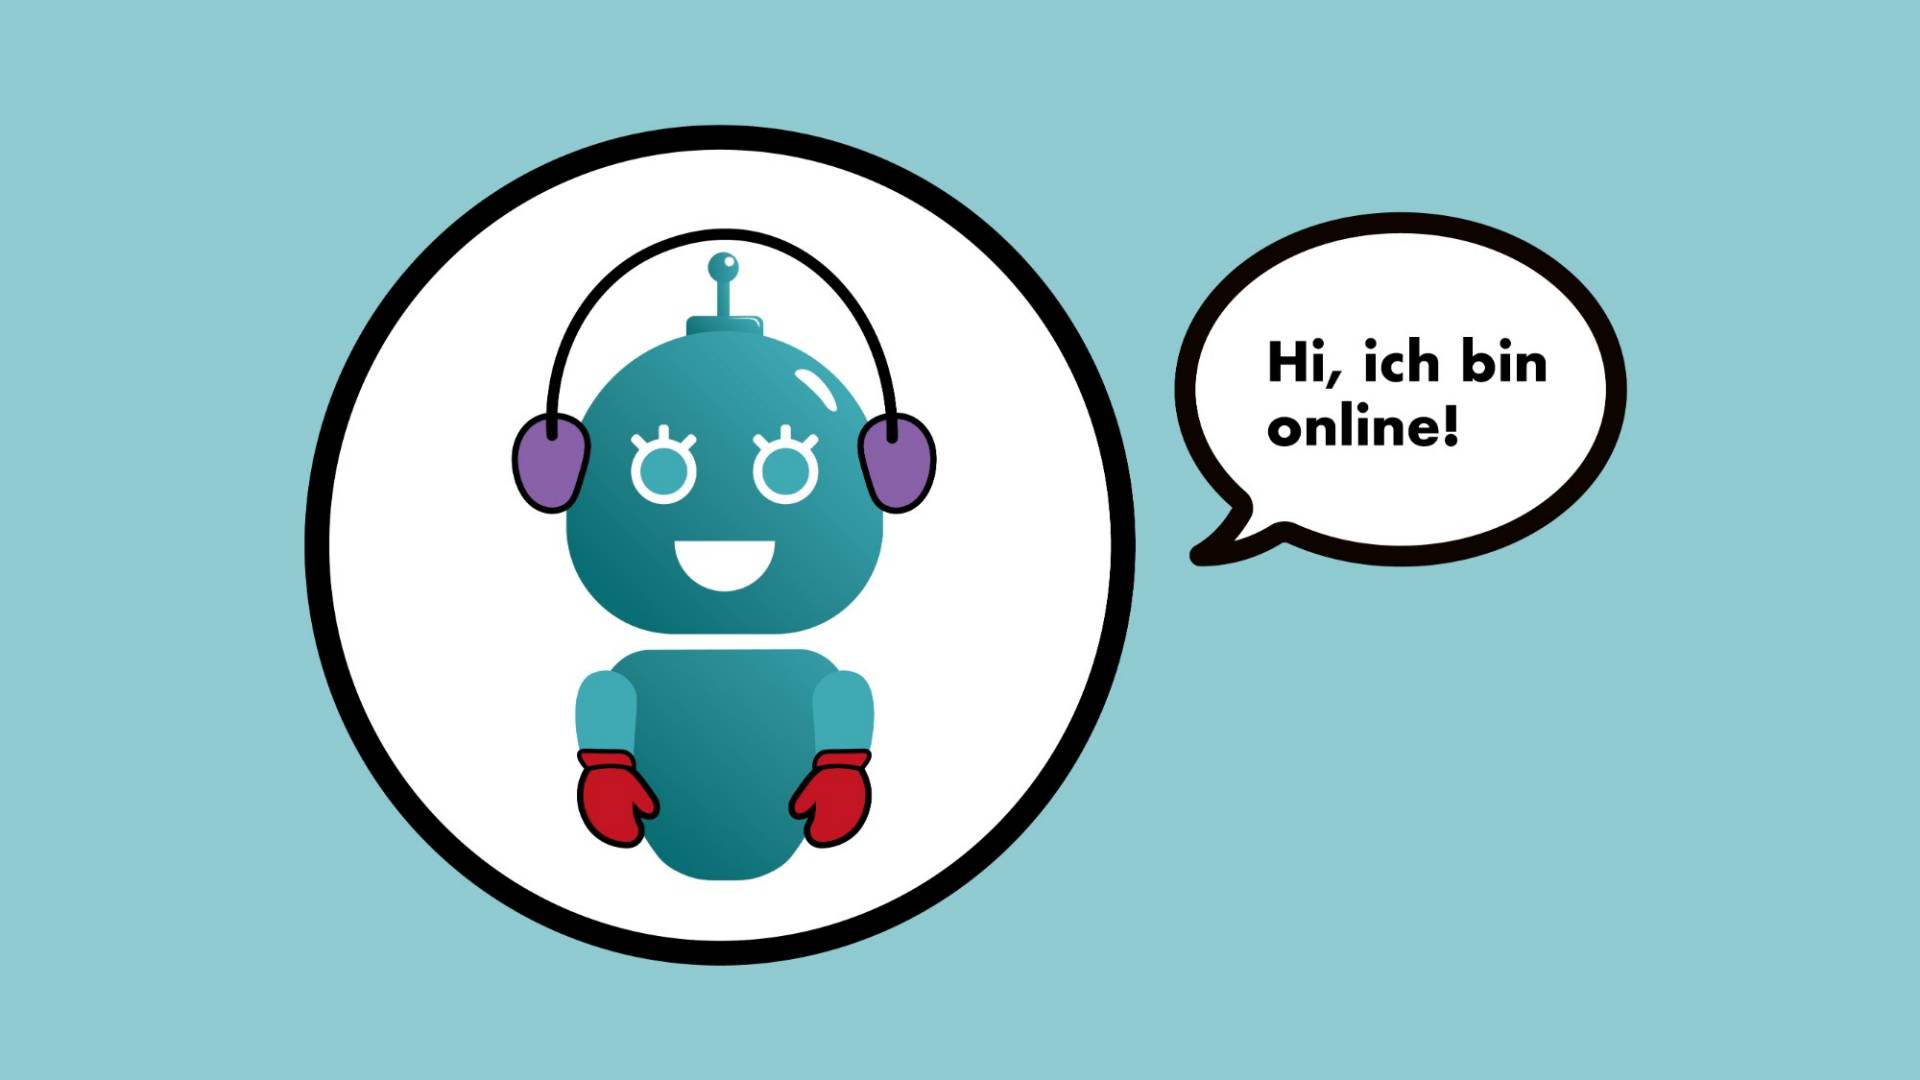 Abbildung der digitalen Versicherungsassistentin Clara, ein türkisfarbener Roboter, mit Sprechblase: "Hi, ich bin online!"